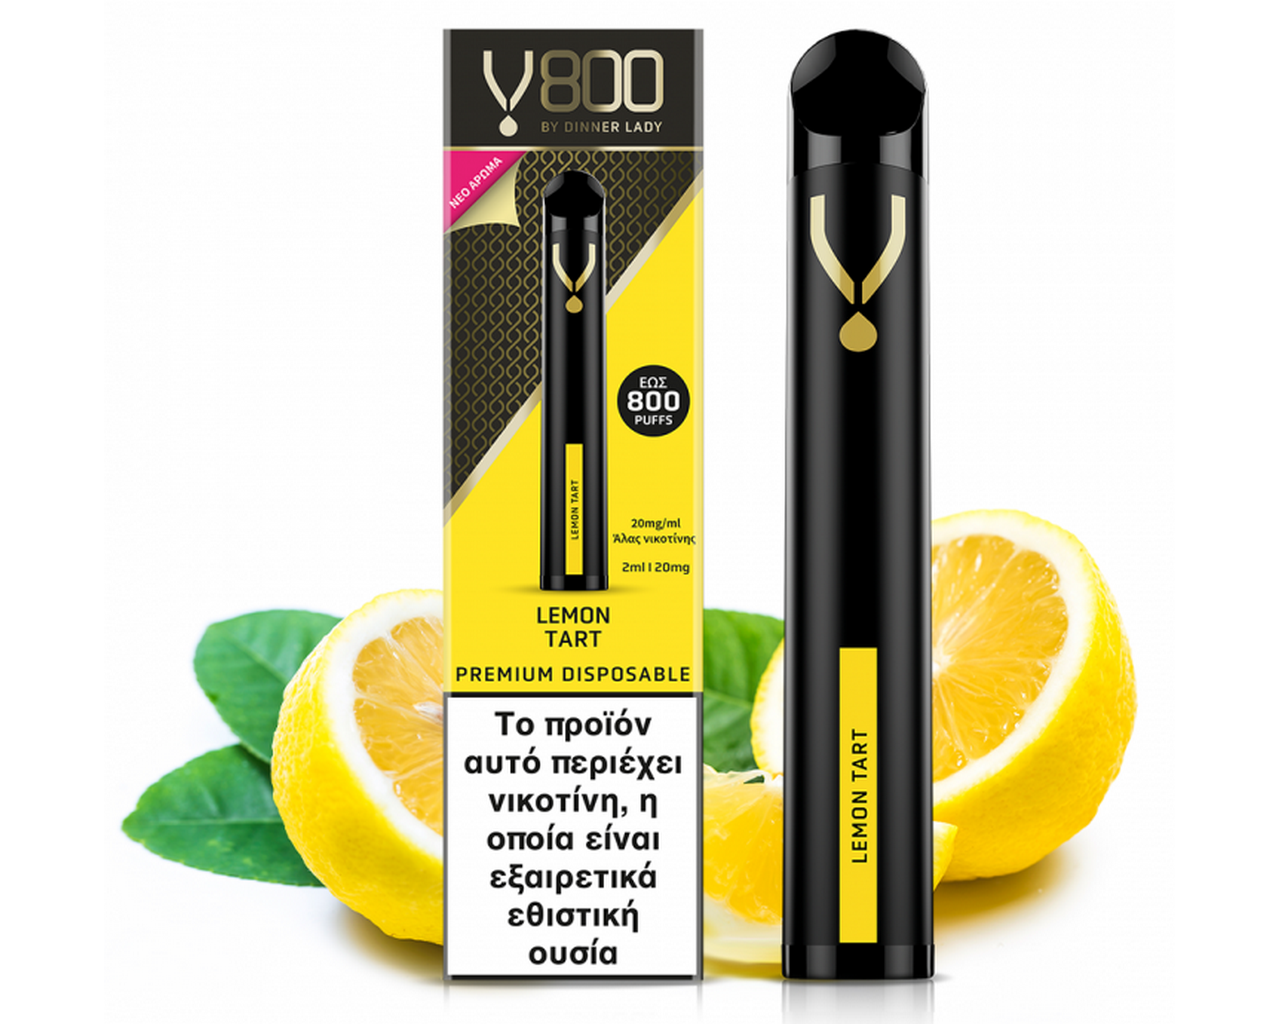 Dinner Lady V800 Disposable Lemon Tart 2ml | 20mg